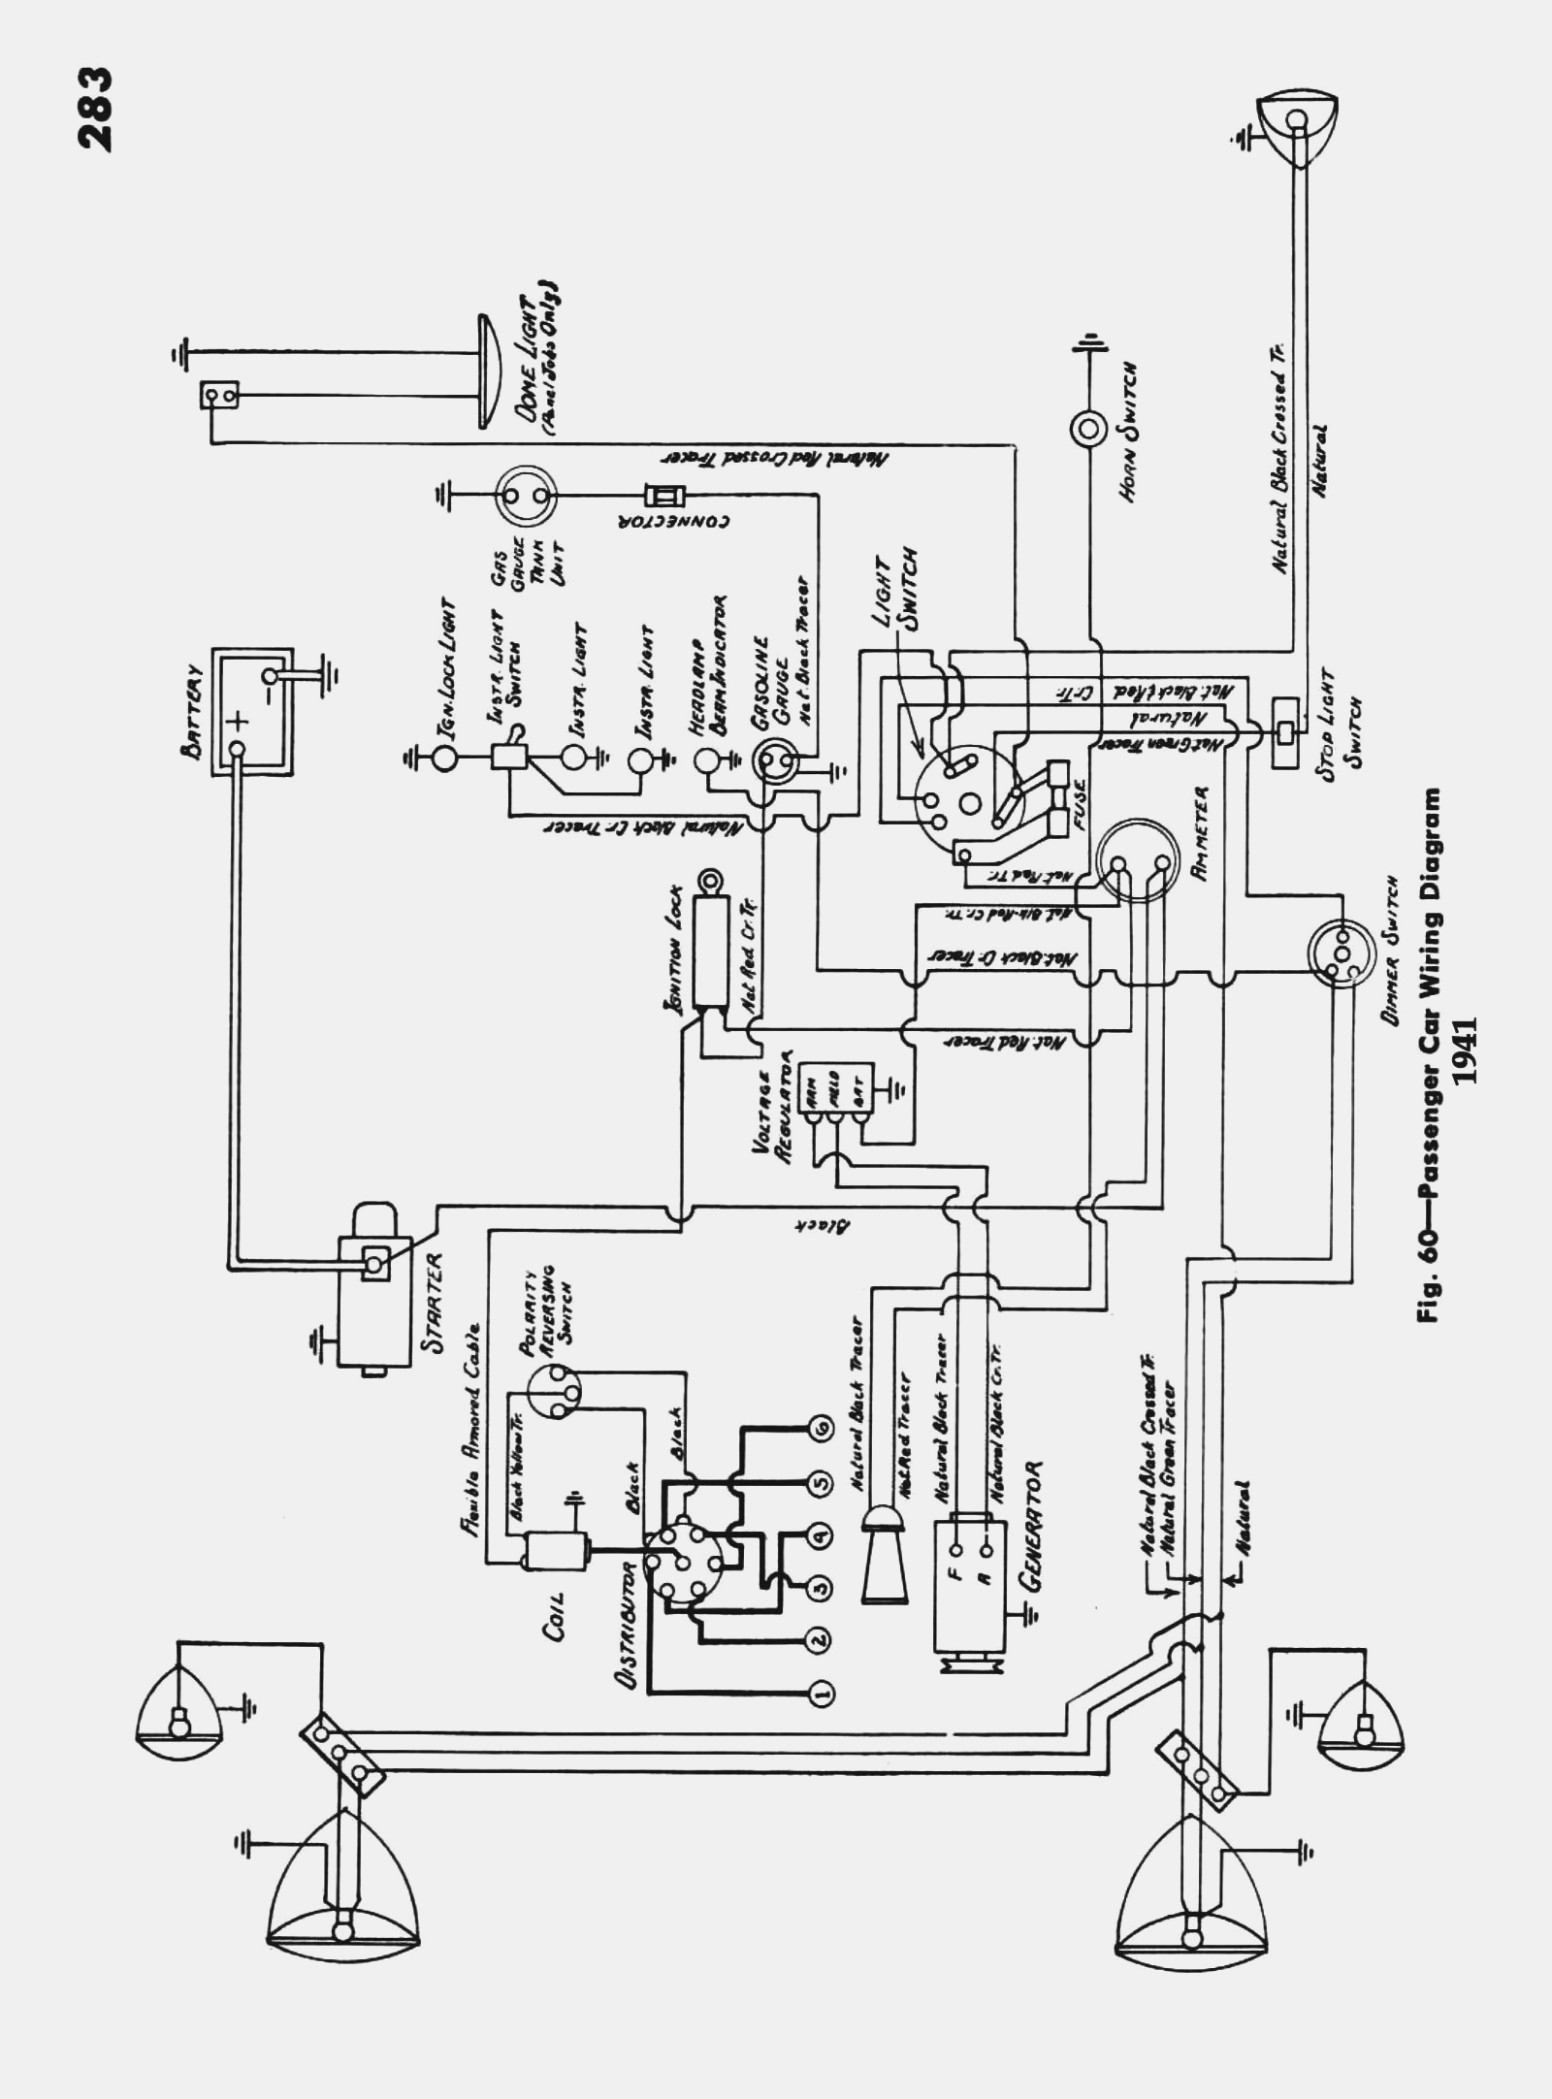 International Truck Dpf Wiring Diagram | Wiring Diagram - International Truck Wiring Diagram Manual